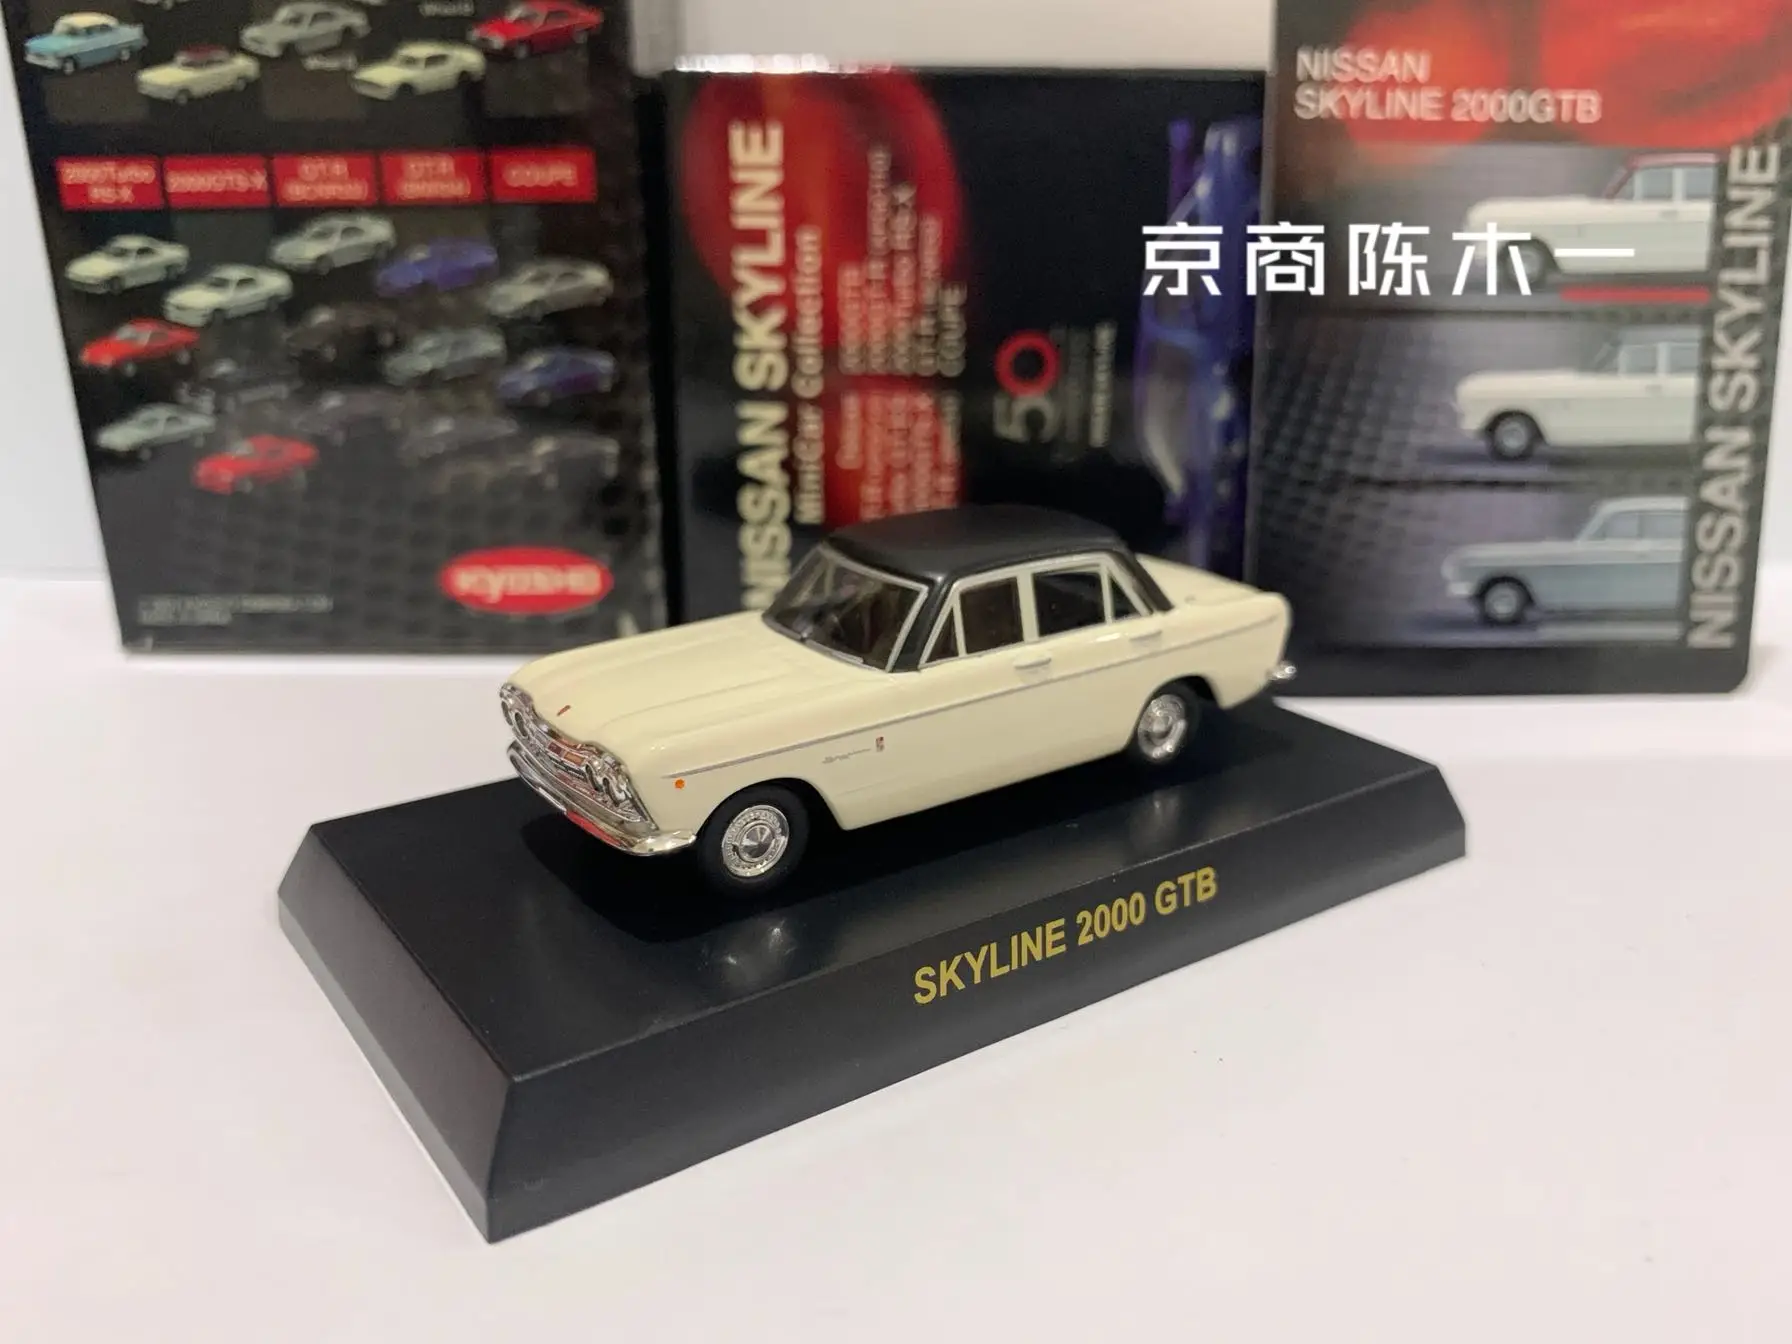 

Коллекция игрушечных моделей автомобилей KYOSHO Skyline 1/64 GTB из литого сплава, 2000